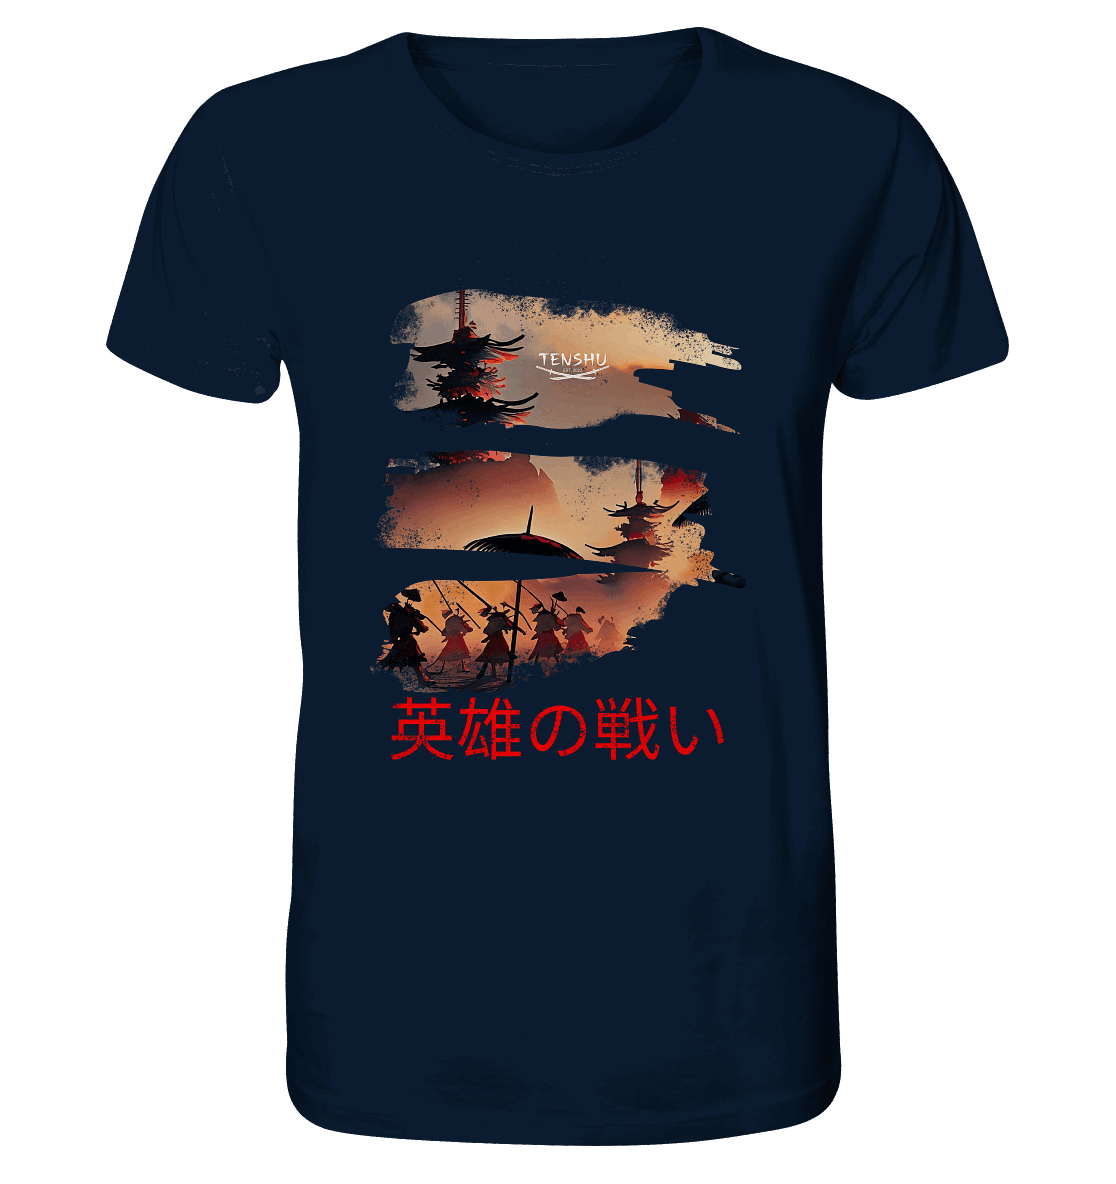 Tenshu / Schlacht der Helden - Organic Shirt